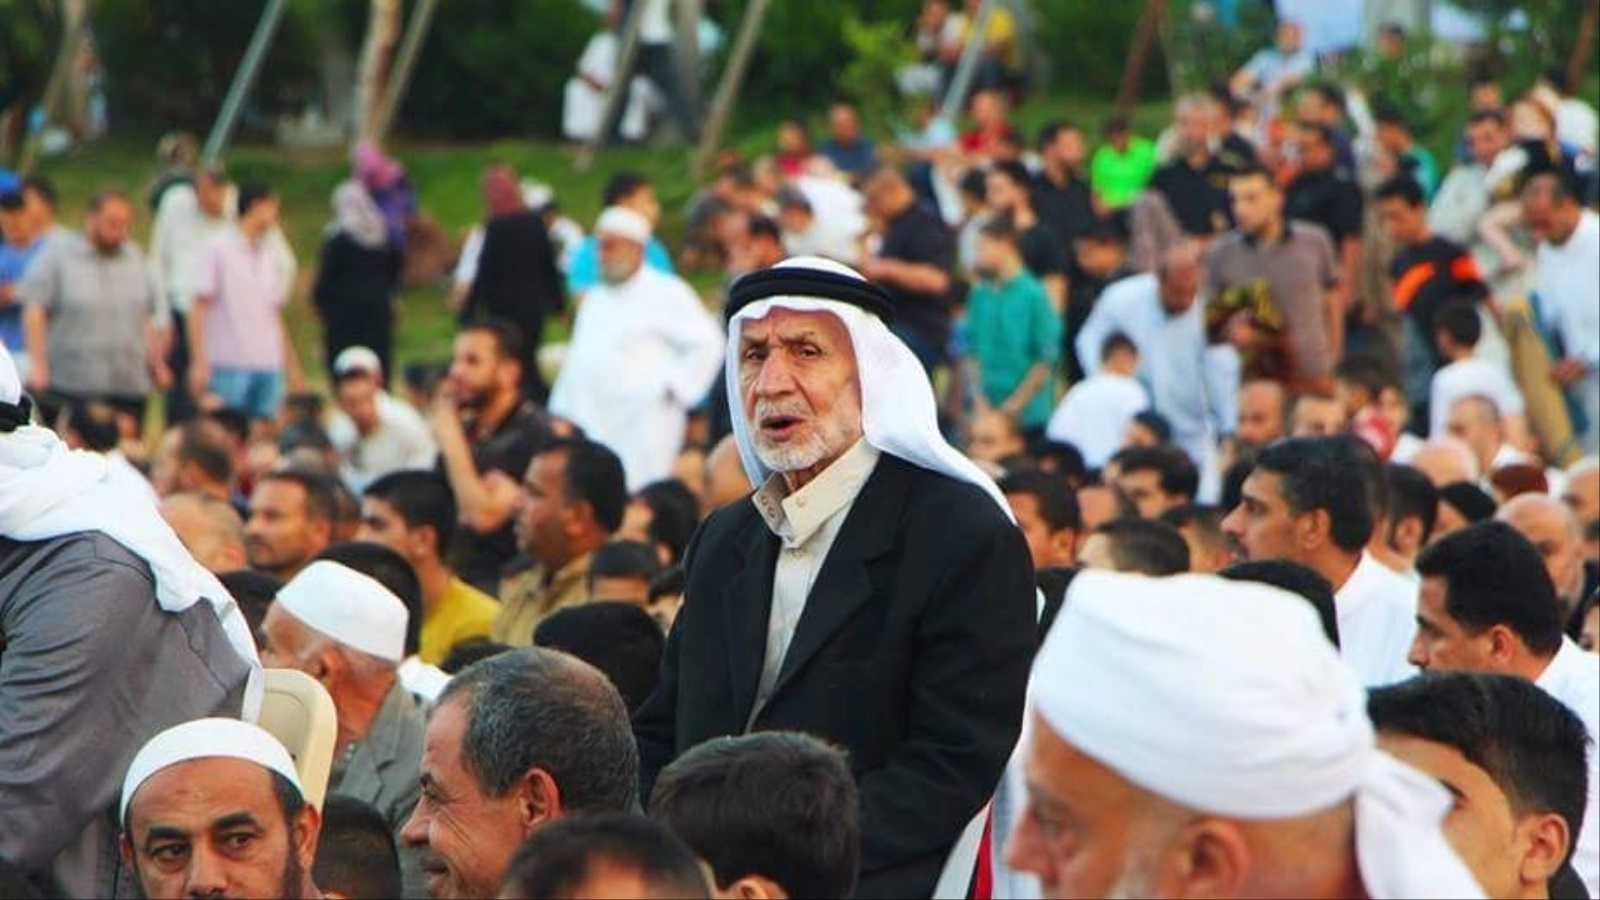 ‪سكان قطاع غزة احتفلوا بالعيد وسط أجواء الحصار وارتفاع الأصوات العربية الناقمة على المقاومة‬ (تويتر)